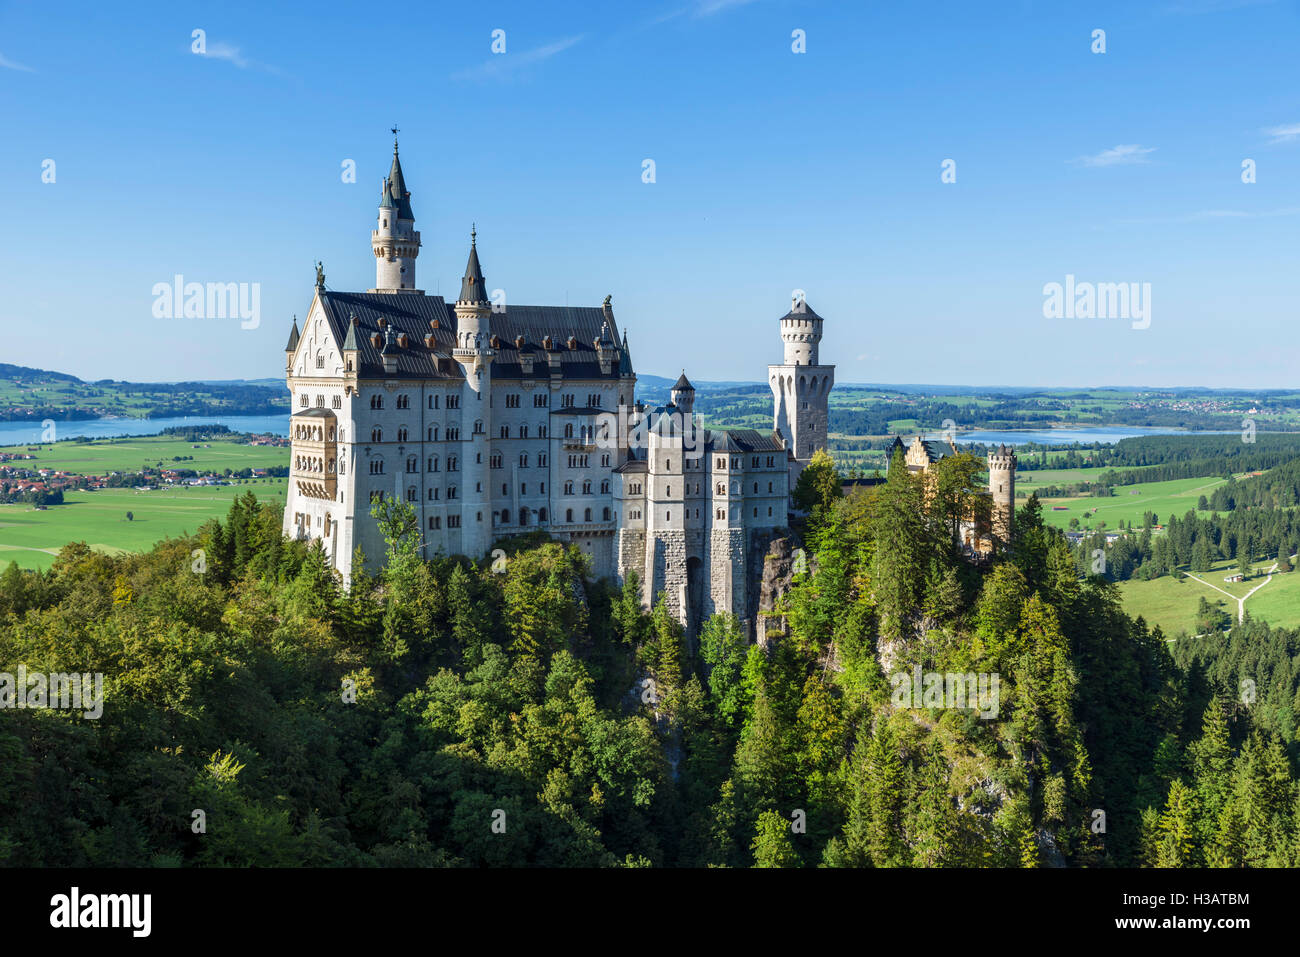 Le château de Neuschwanstein (Schloss Neuschwanstein), le palais de contes de fées construit par le roi Louis II de Bavière, Hohenschwangau, Allemagne Banque D'Images